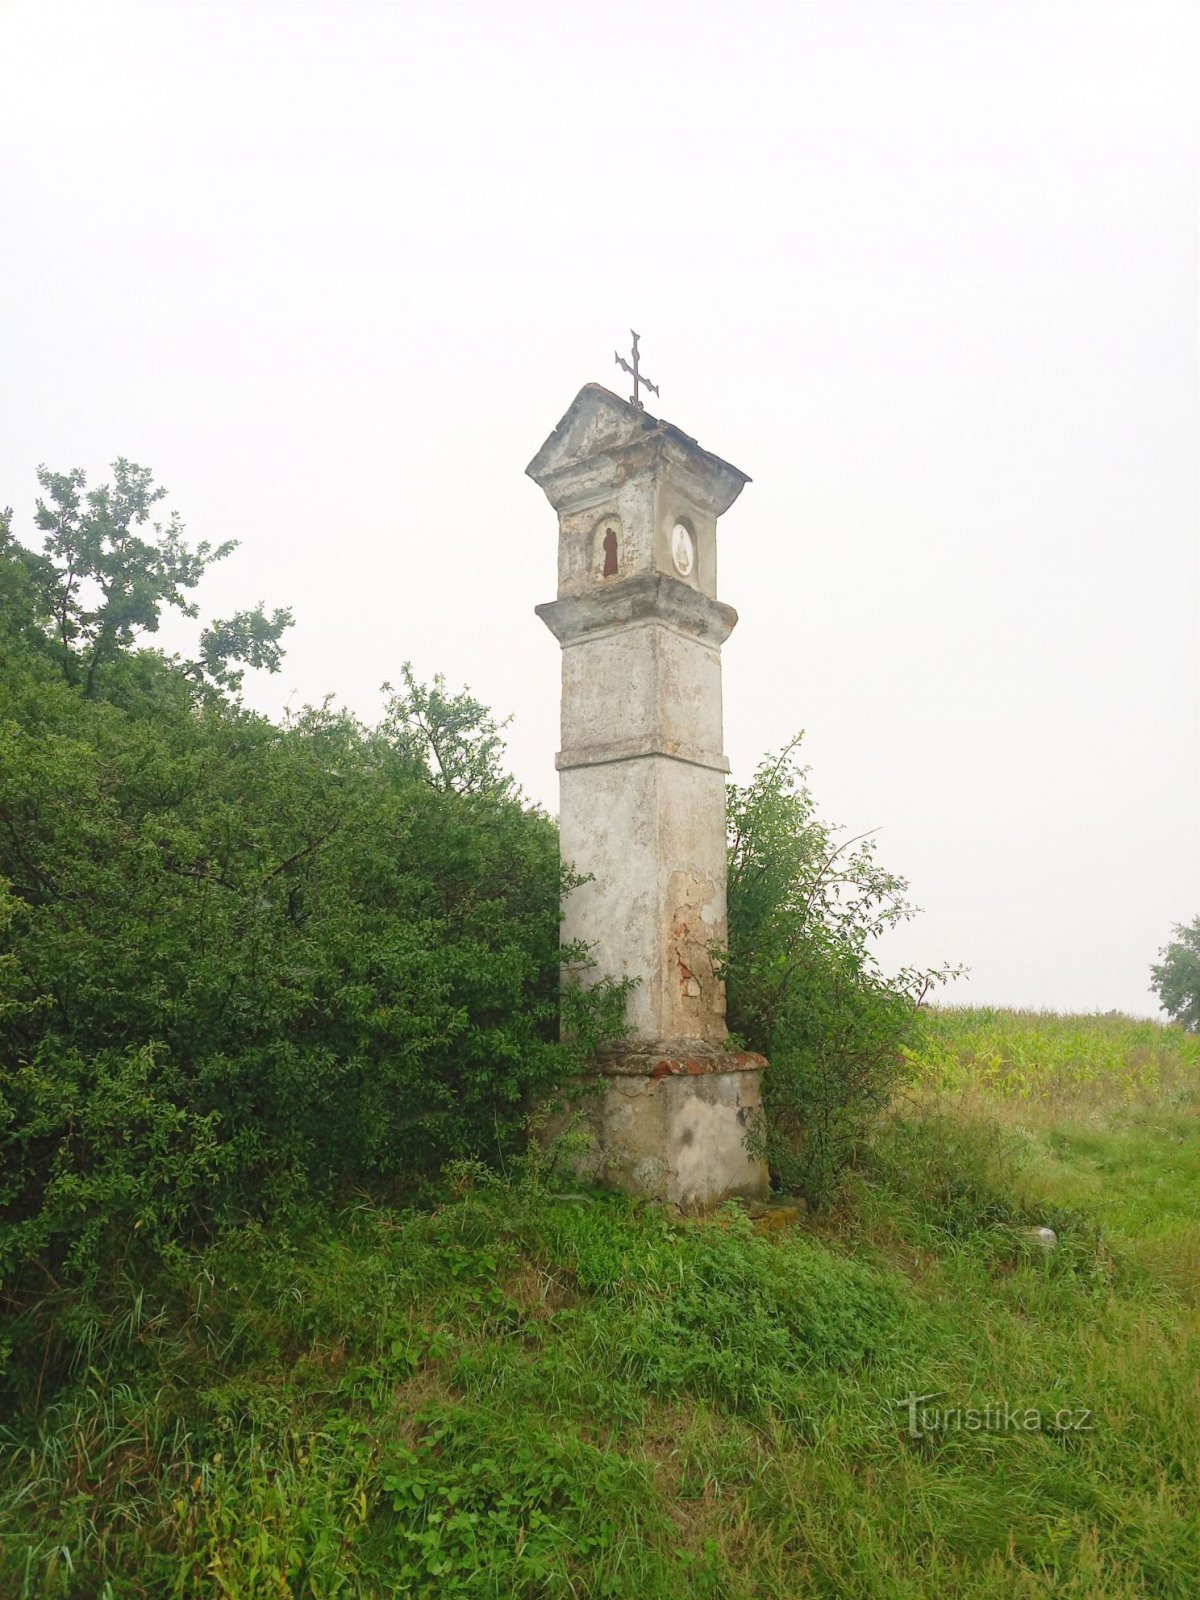 2. Viên gạch gây ra sự thống khổ gần Kňovice từ đầu thế kỷ 18 và 19